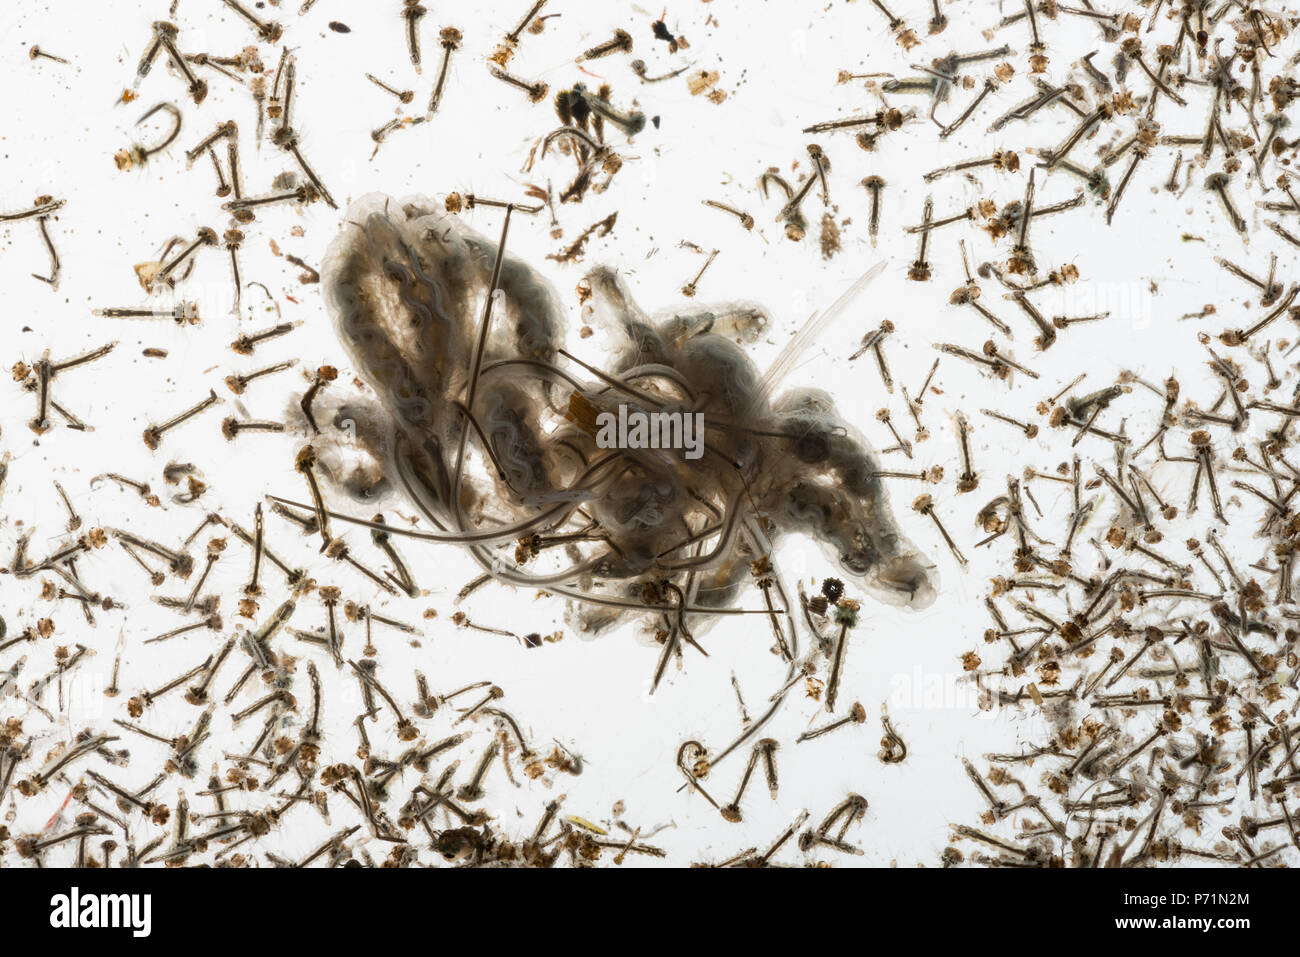 Mosquito Culicidae pupe e larve lungo con drone fly vermi dibattere in acqua di stagno di varie fasi di sviluppo che mostra la struttura interna Foto Stock